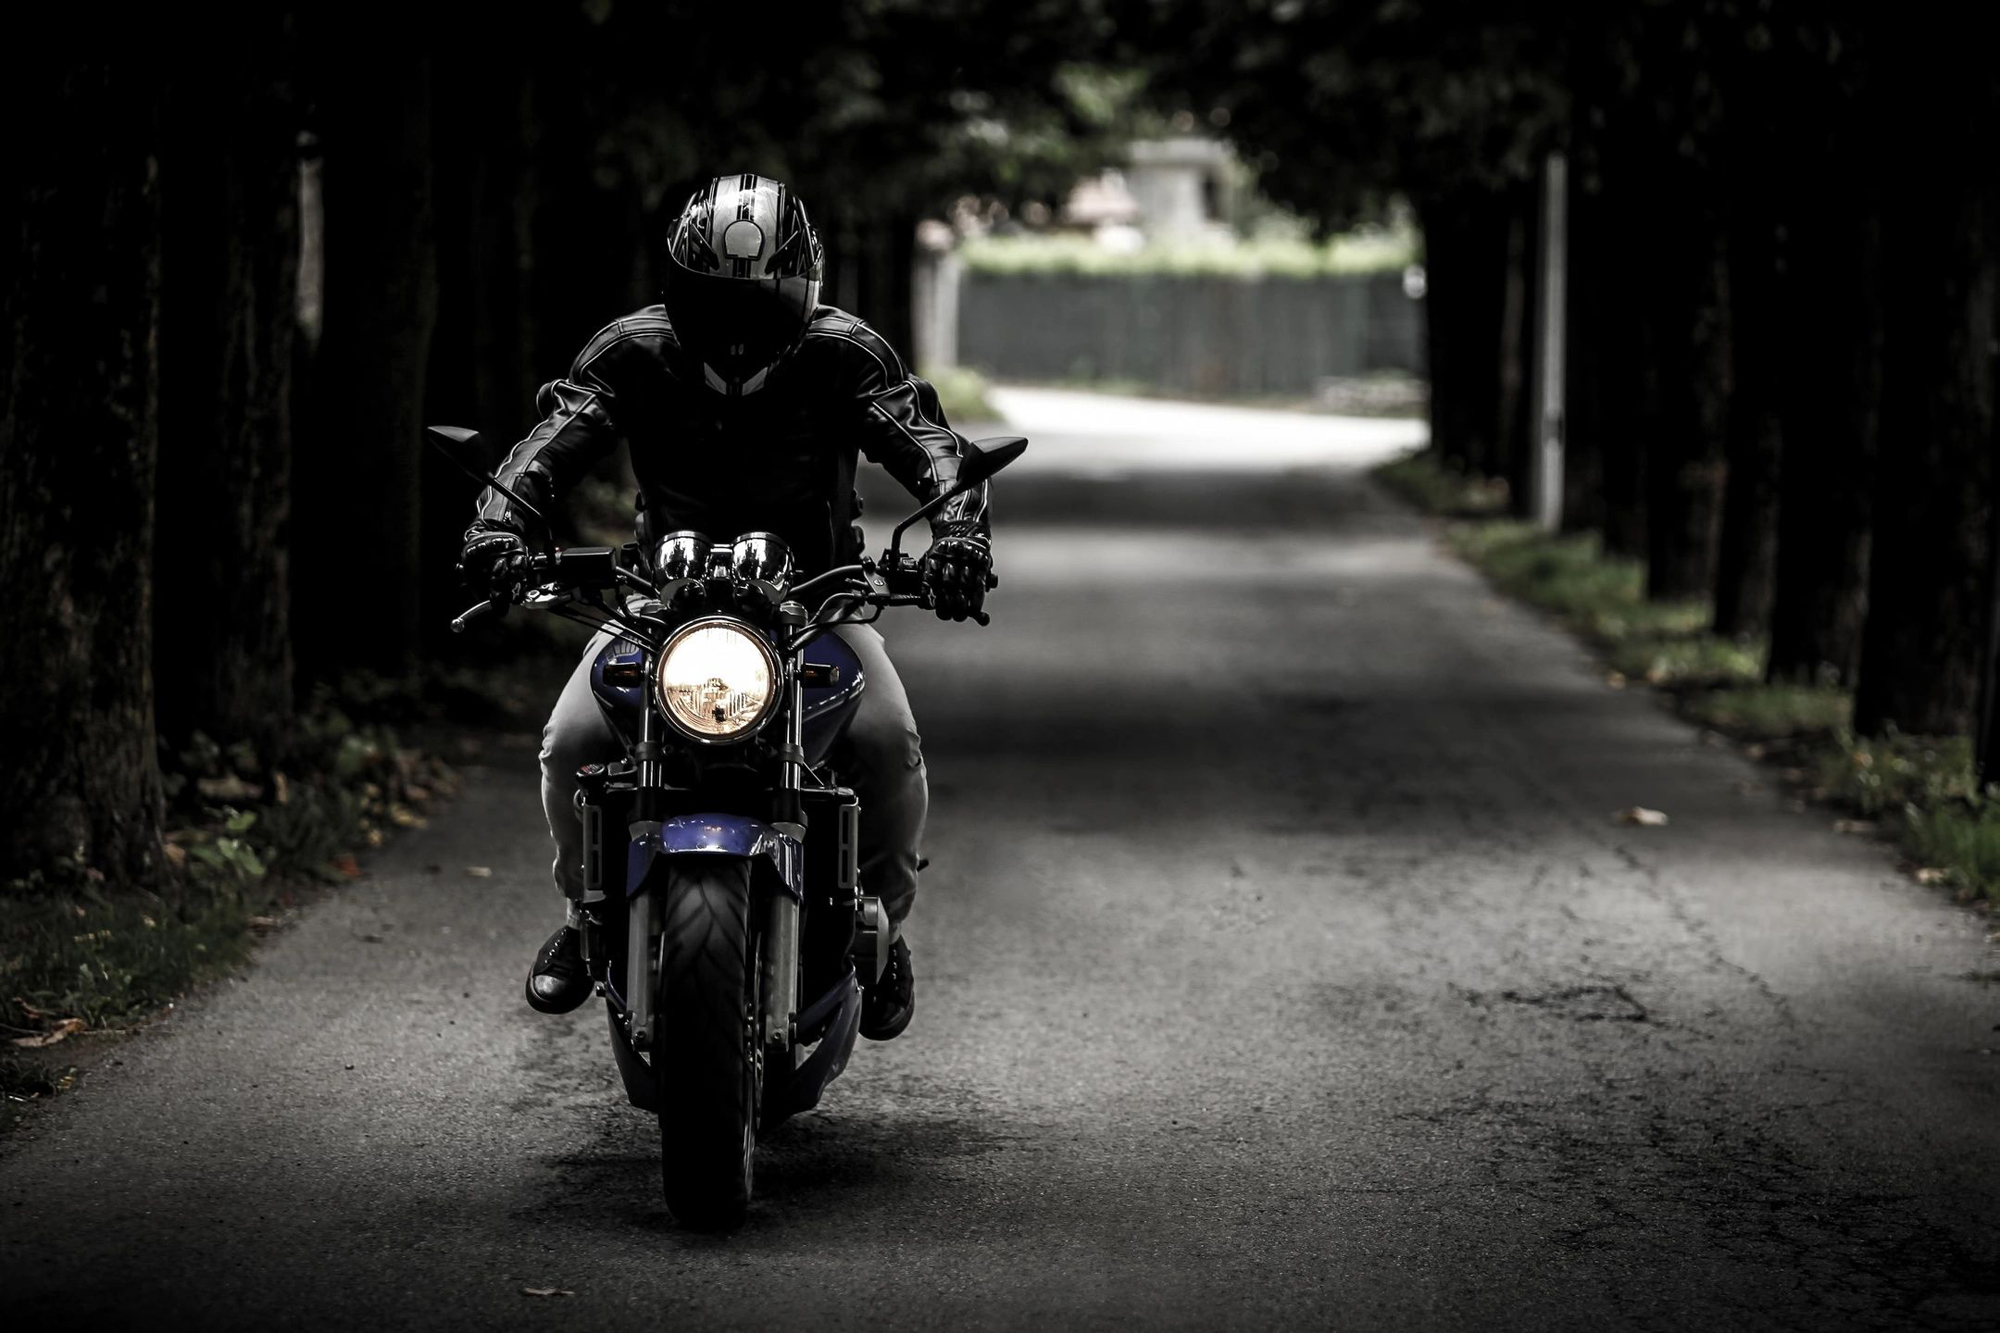 A motorbike rider